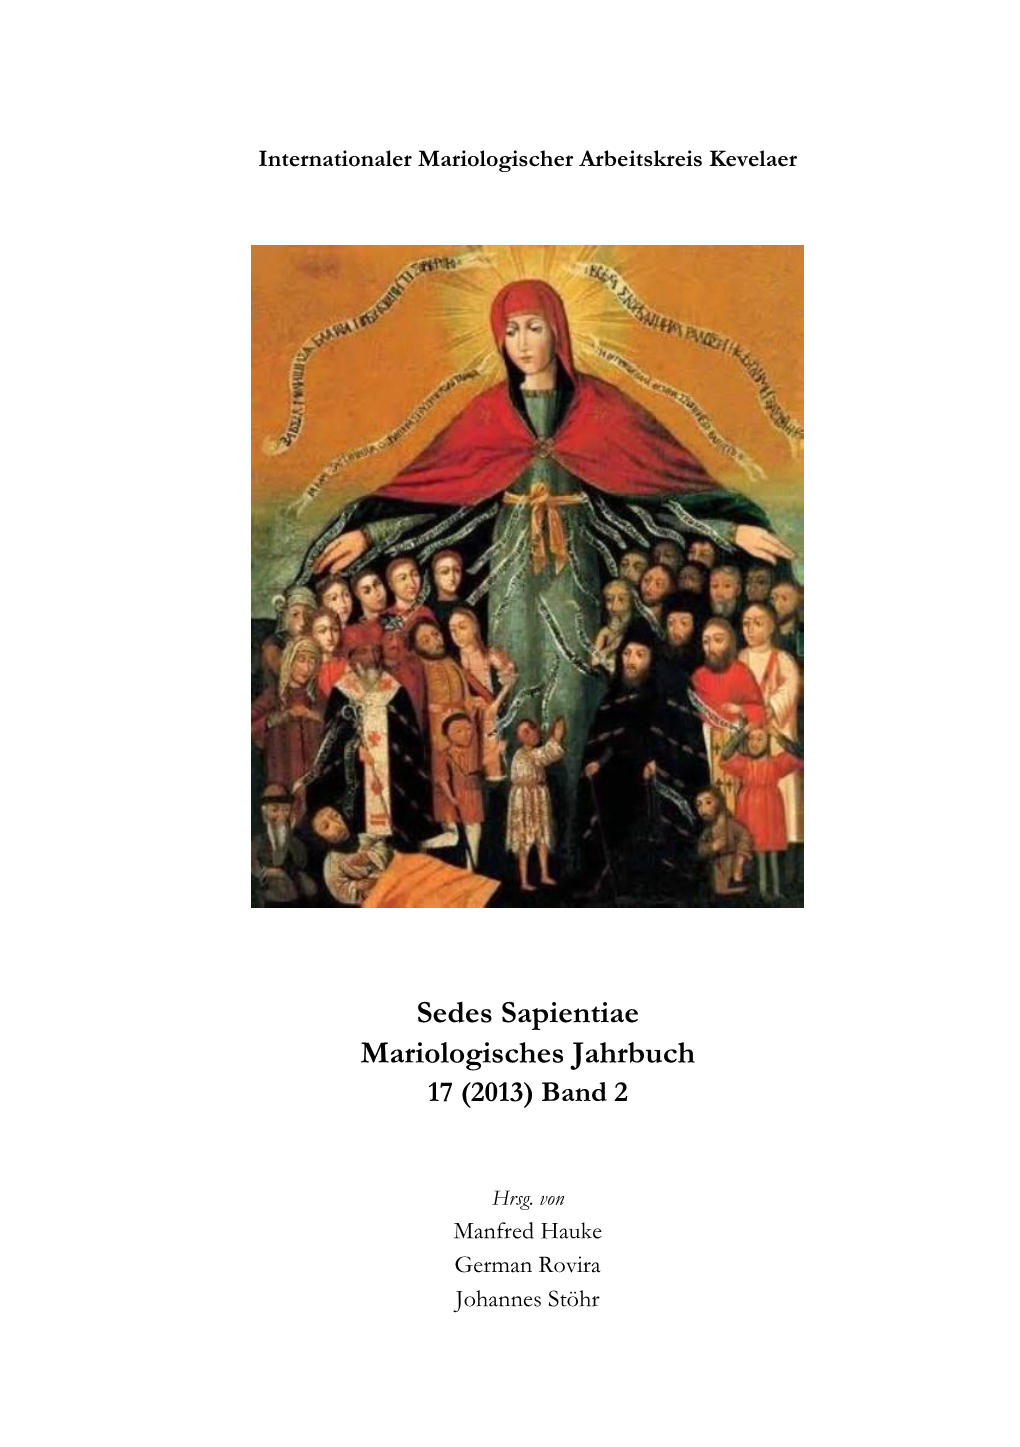 Mariologisches Jahrbuch, 17 (2013) Bd